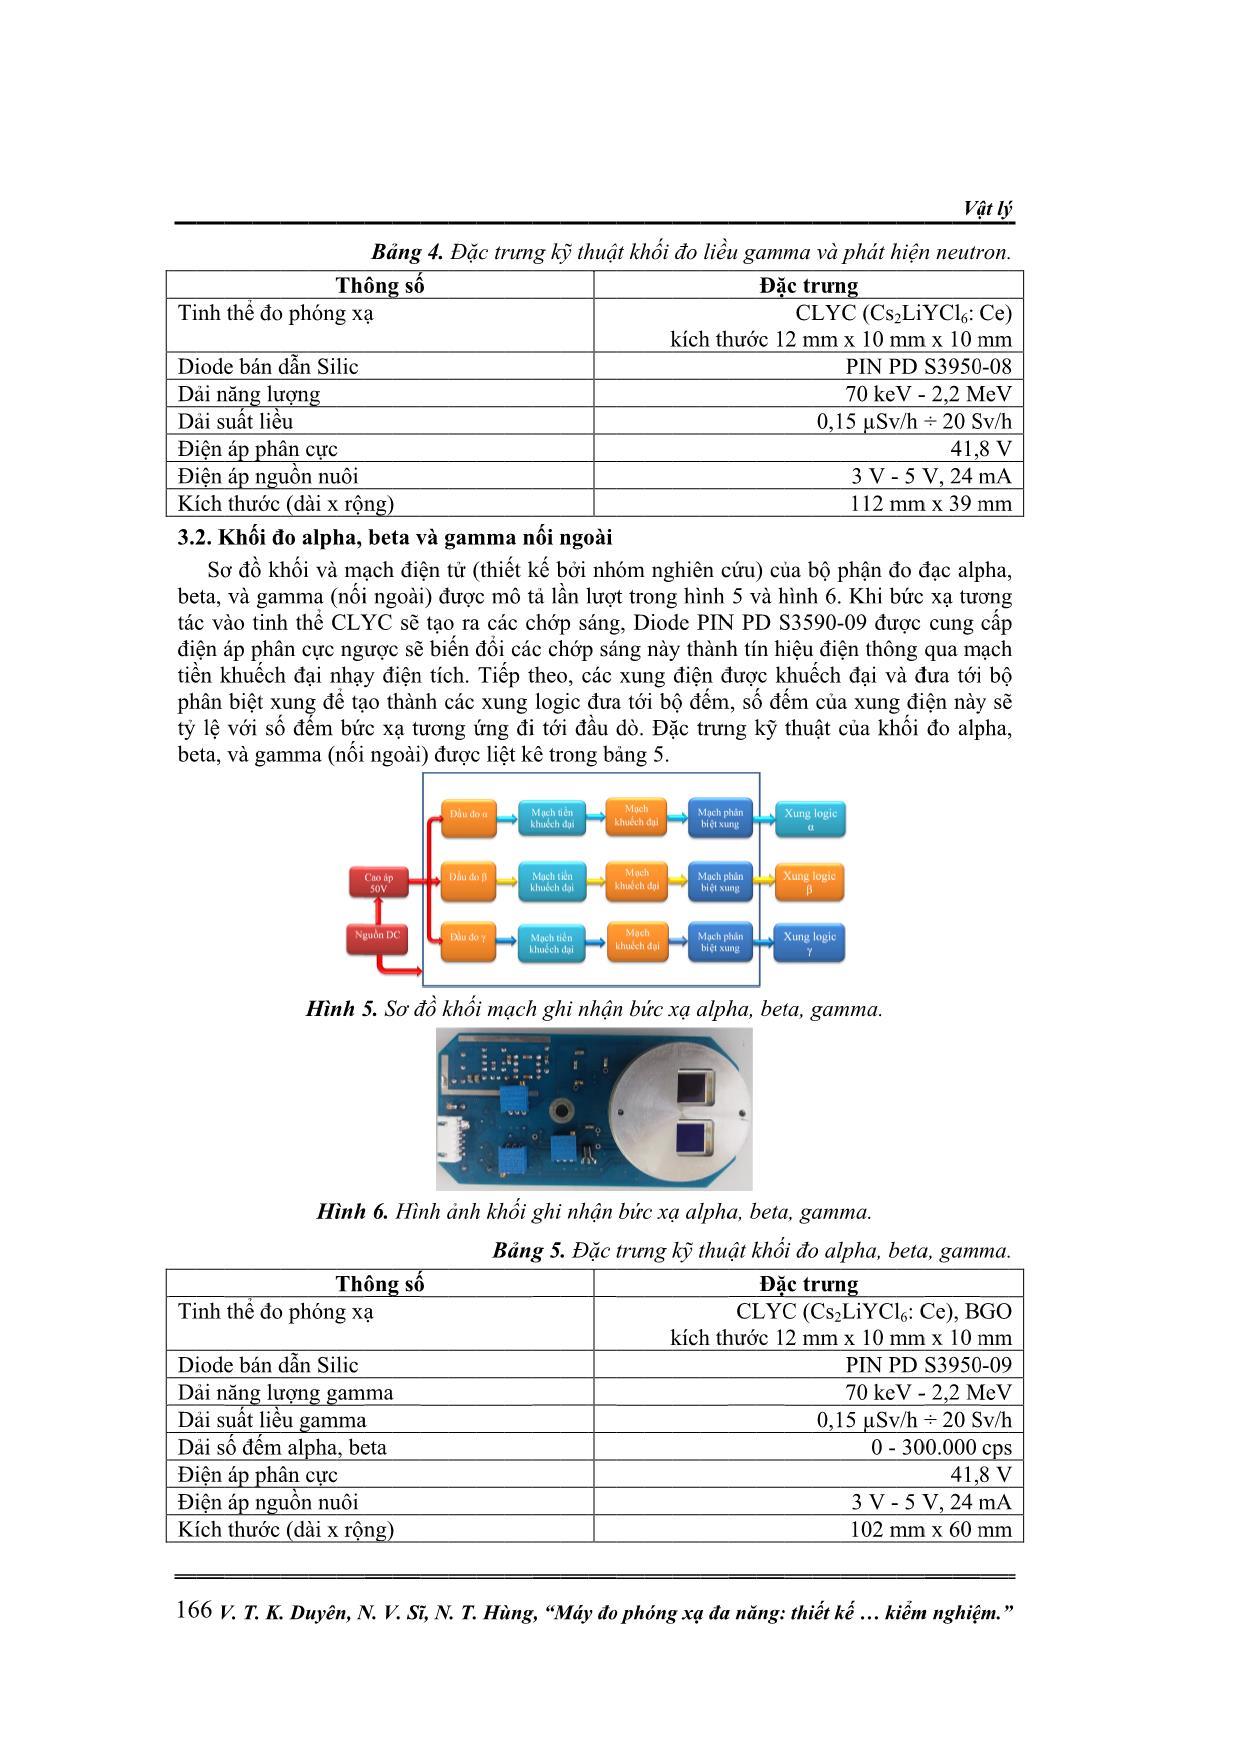 Máy đo phóng xạ đa năng: Thiết kế, chế tạo và kiểm nghiệm trang 5